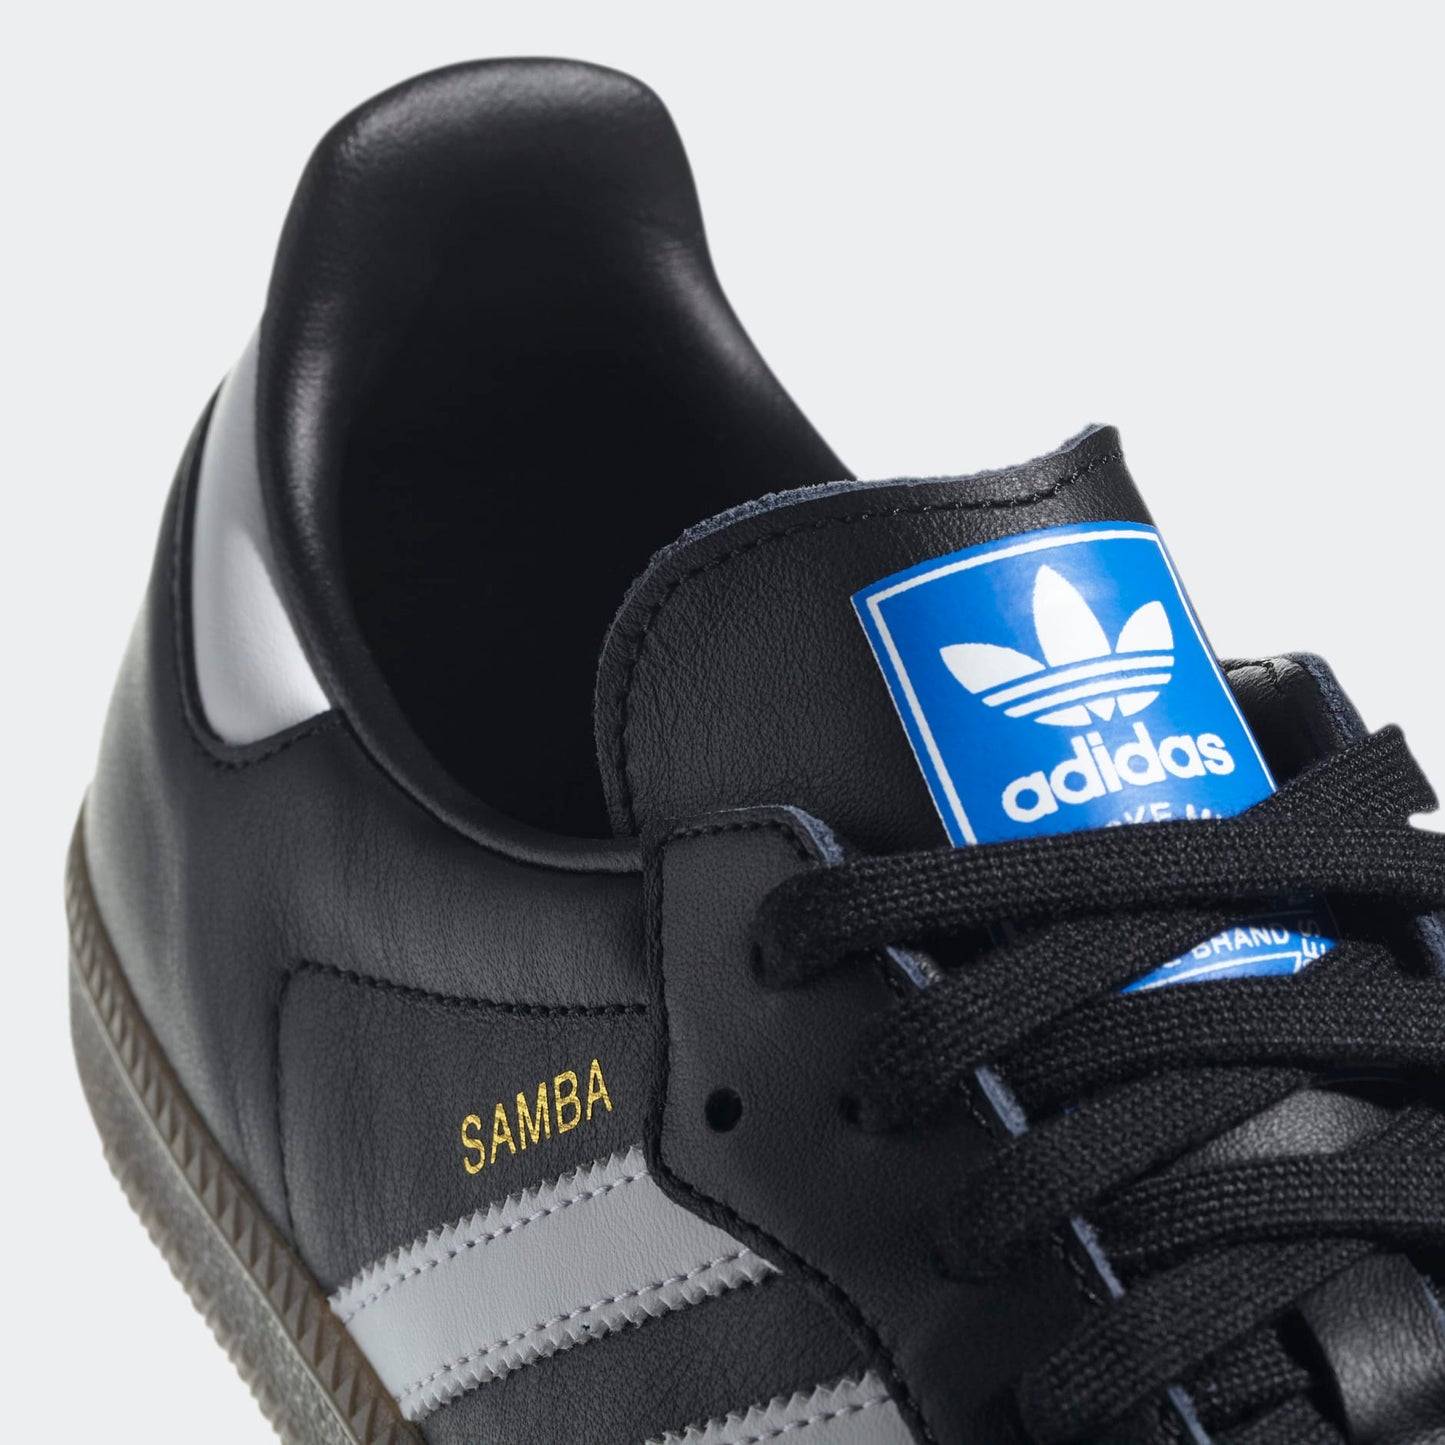 Adidas originals samba OG black